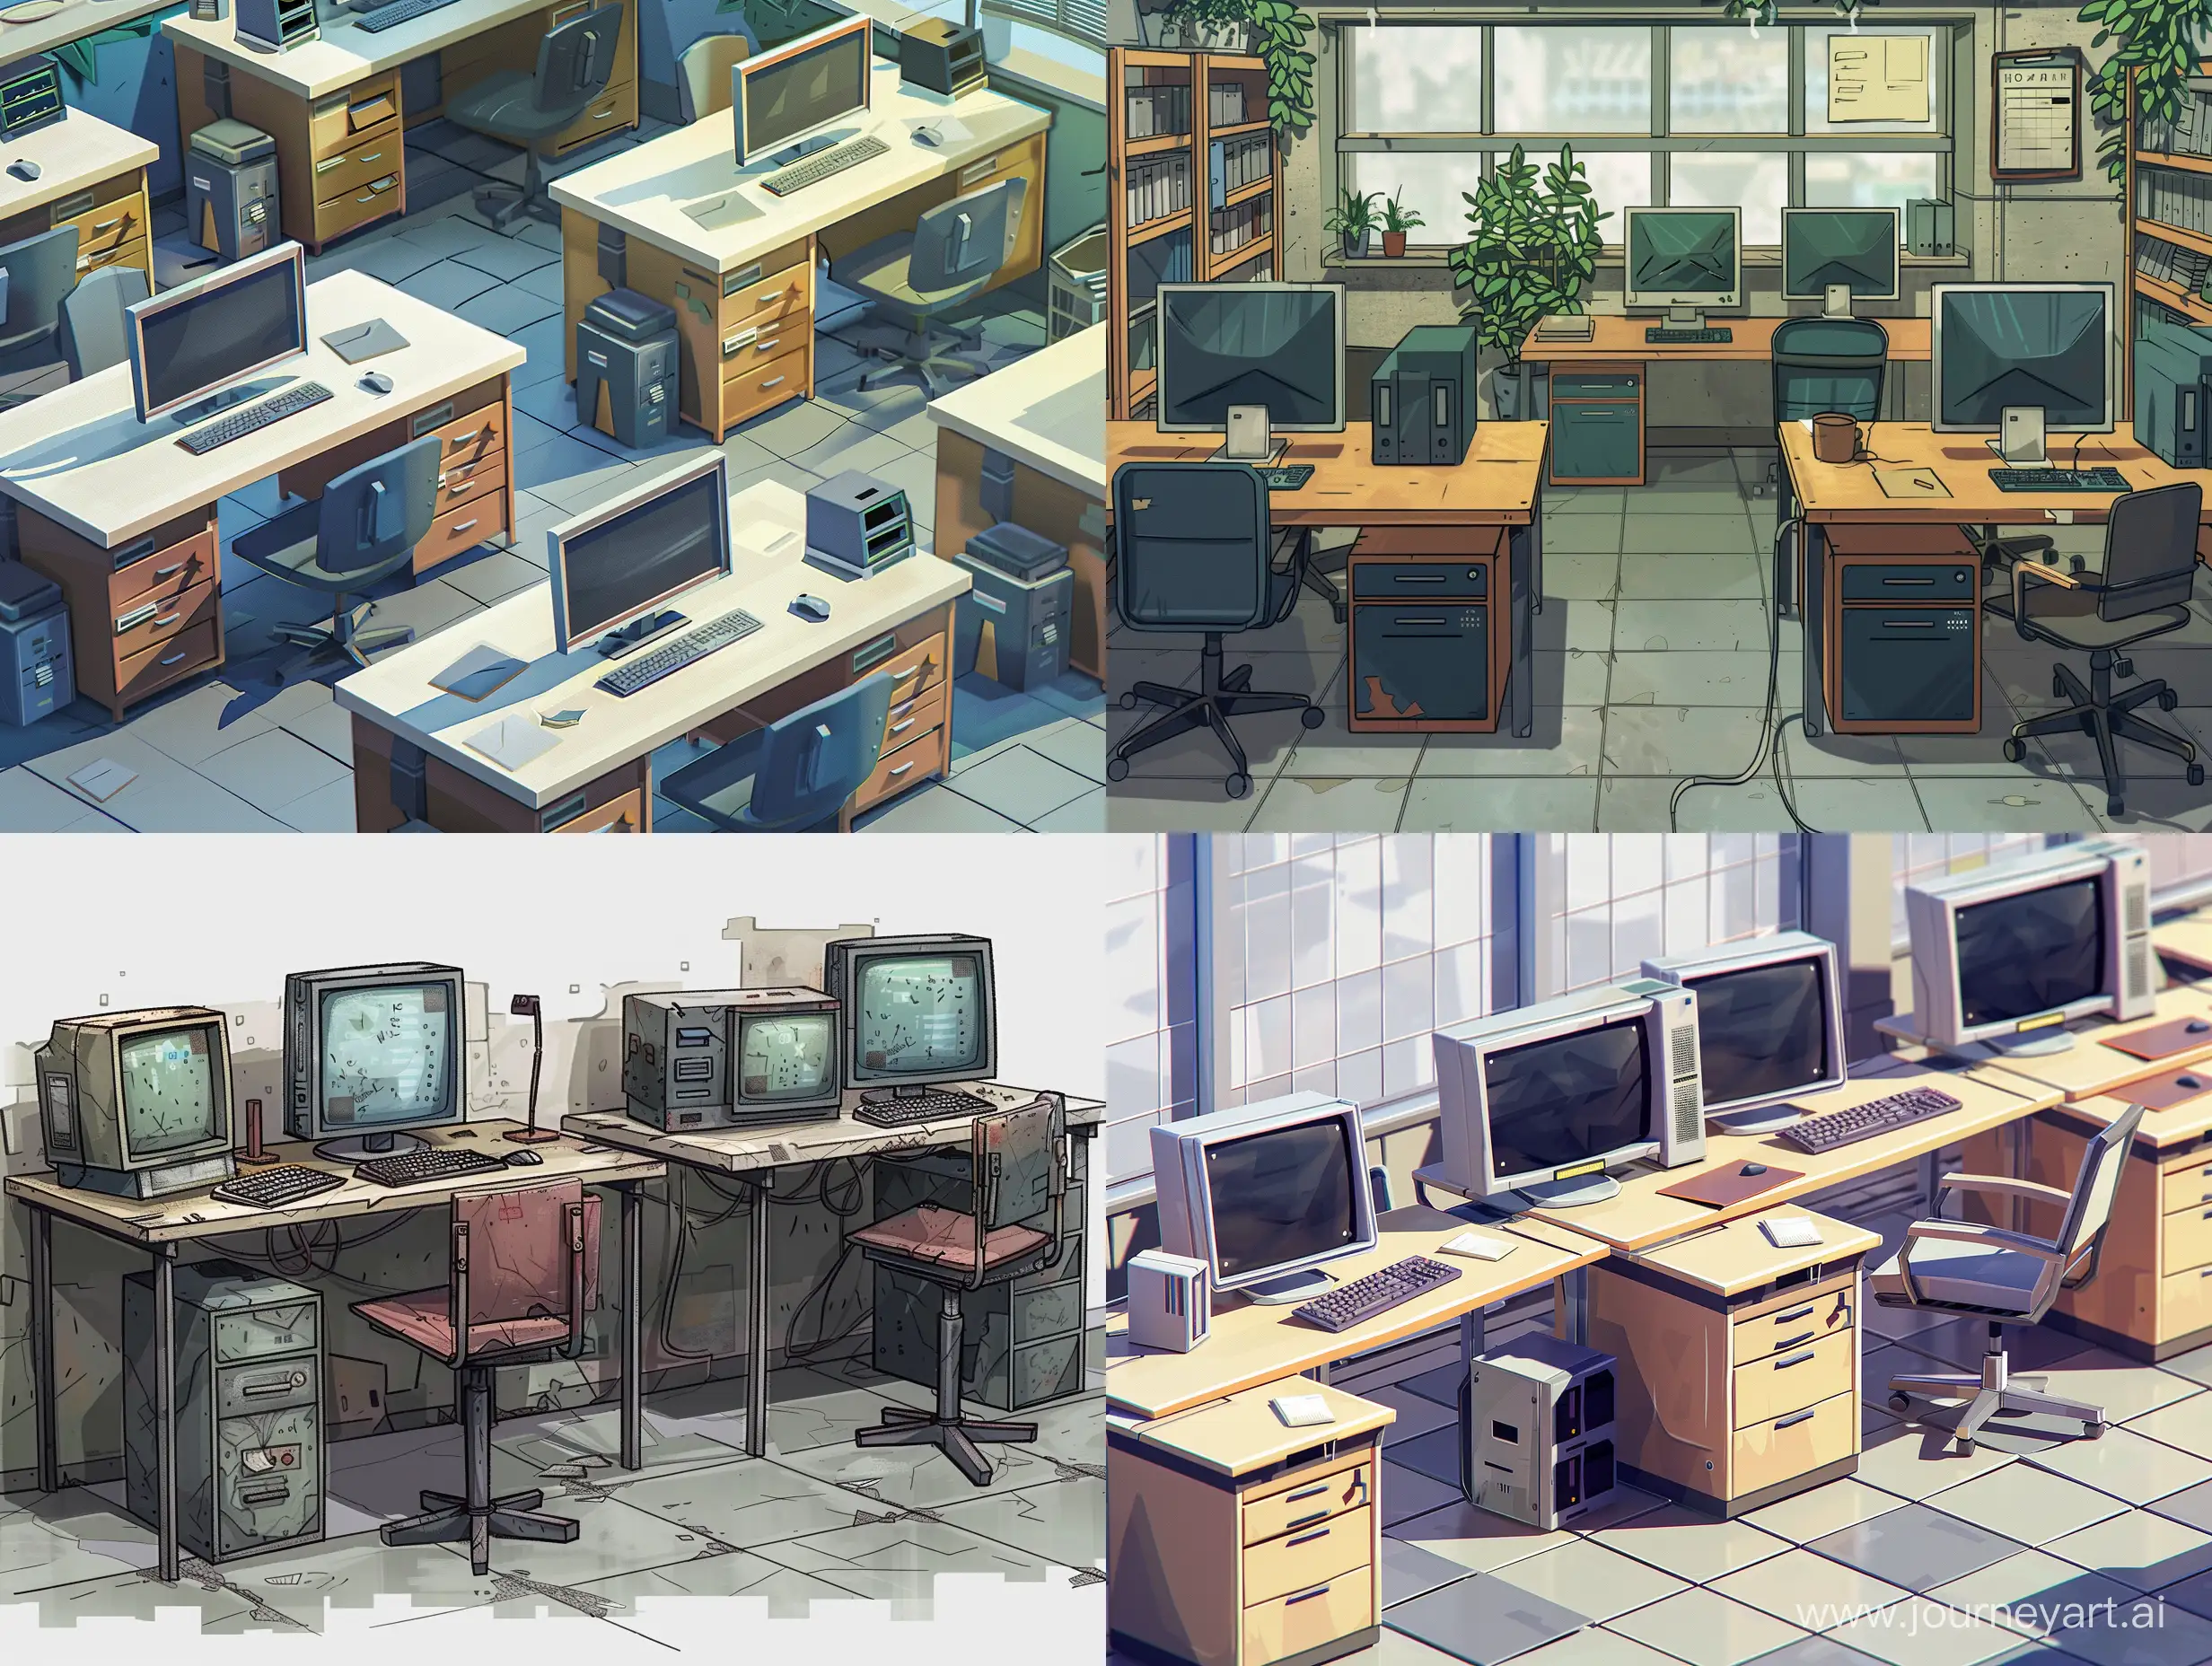 Minimalist-Office-Desks-Sprites-for-PostApocalyptic-2D-Platformer-Game